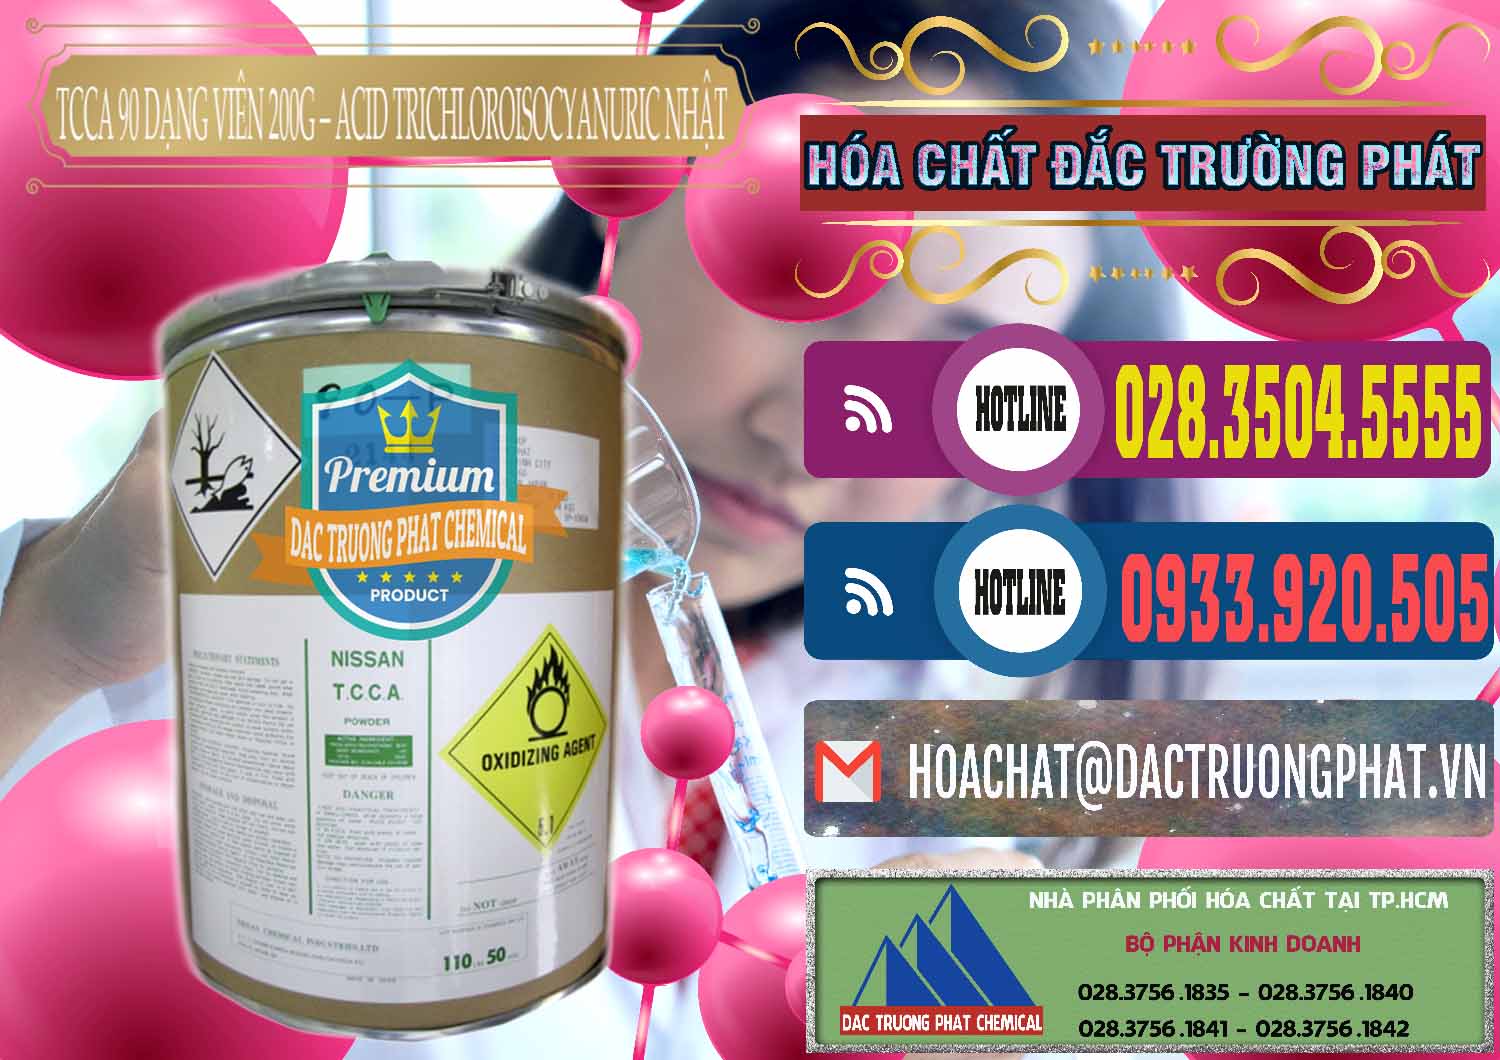 Nơi chuyên bán & cung cấp TCCA - Acid Trichloroisocyanuric 90% Dạng Viên 200G Nissan Nhật Bản Japan - 0163 - Nơi cung ứng - phân phối hóa chất tại TP.HCM - muabanhoachat.com.vn